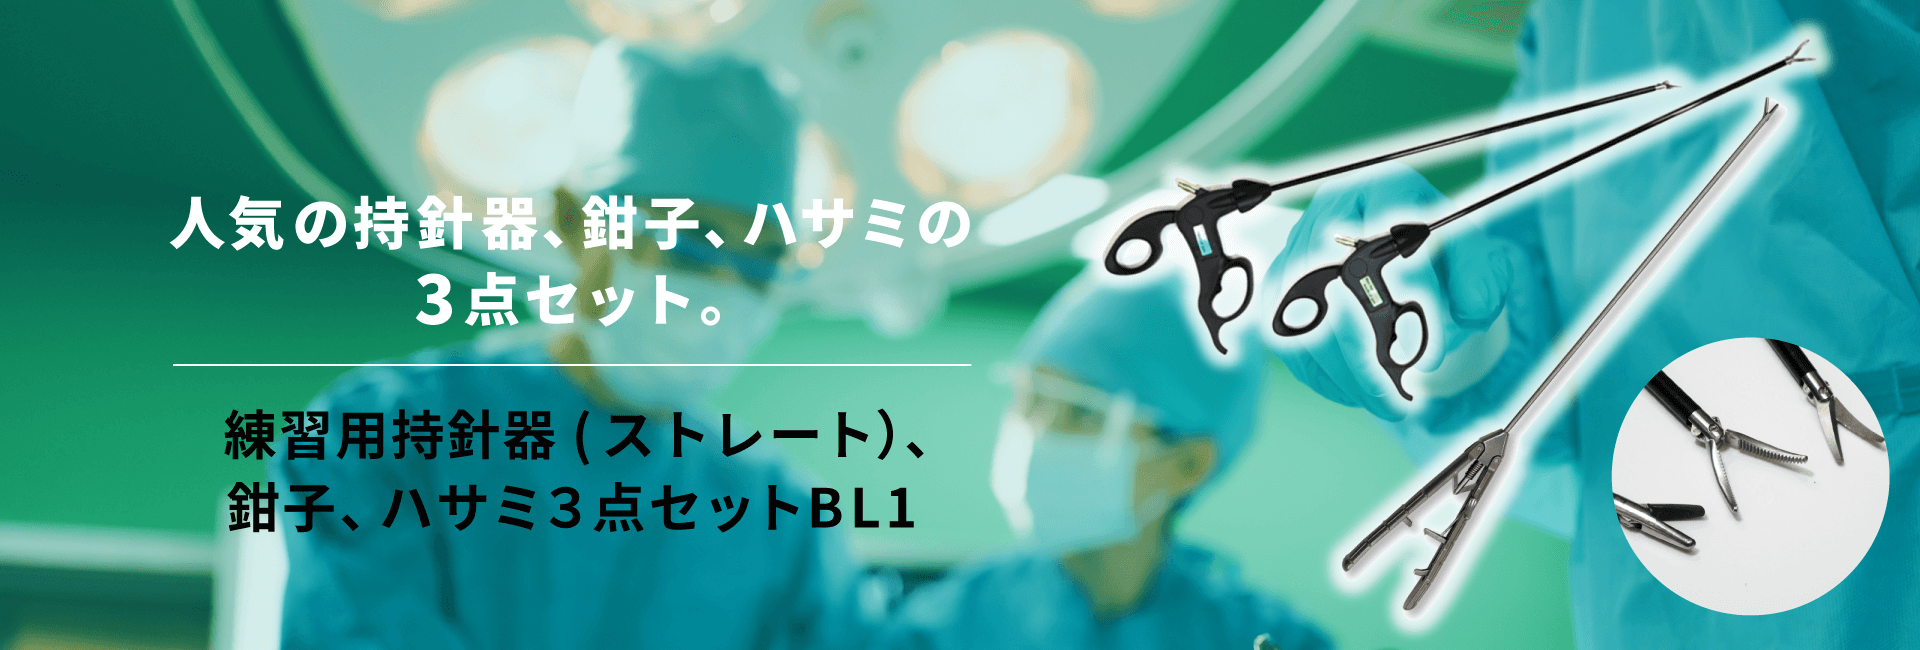 腹腔鏡トレーニングボックスのお店 by KOTOBUKI Medical株式会社